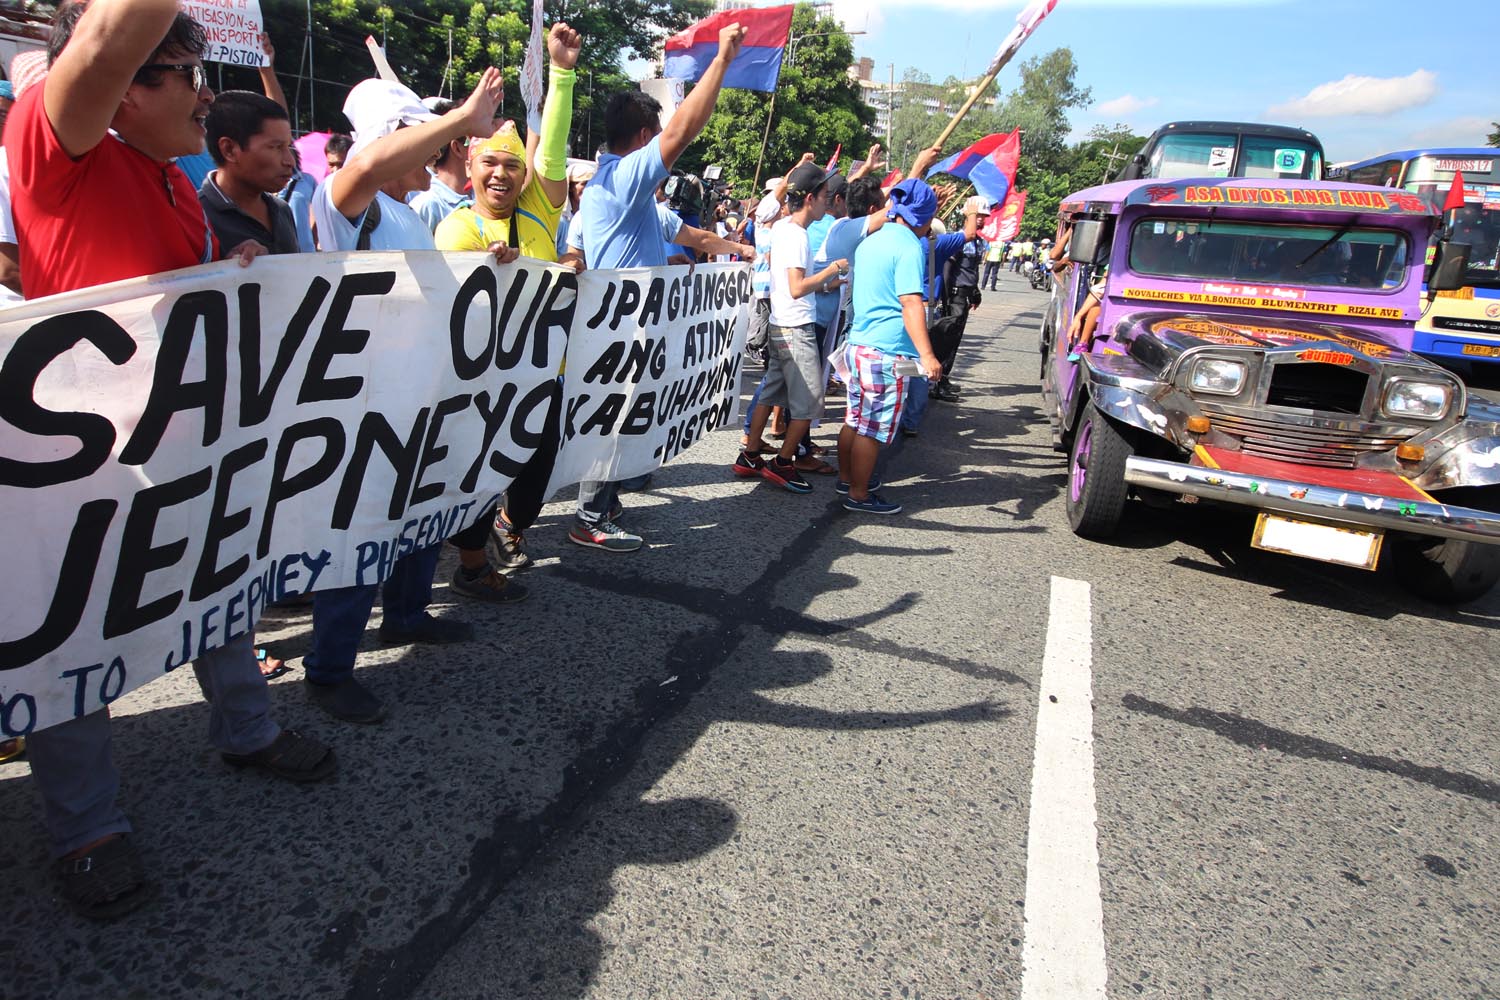 Jeepney riders feel effects of transport strike